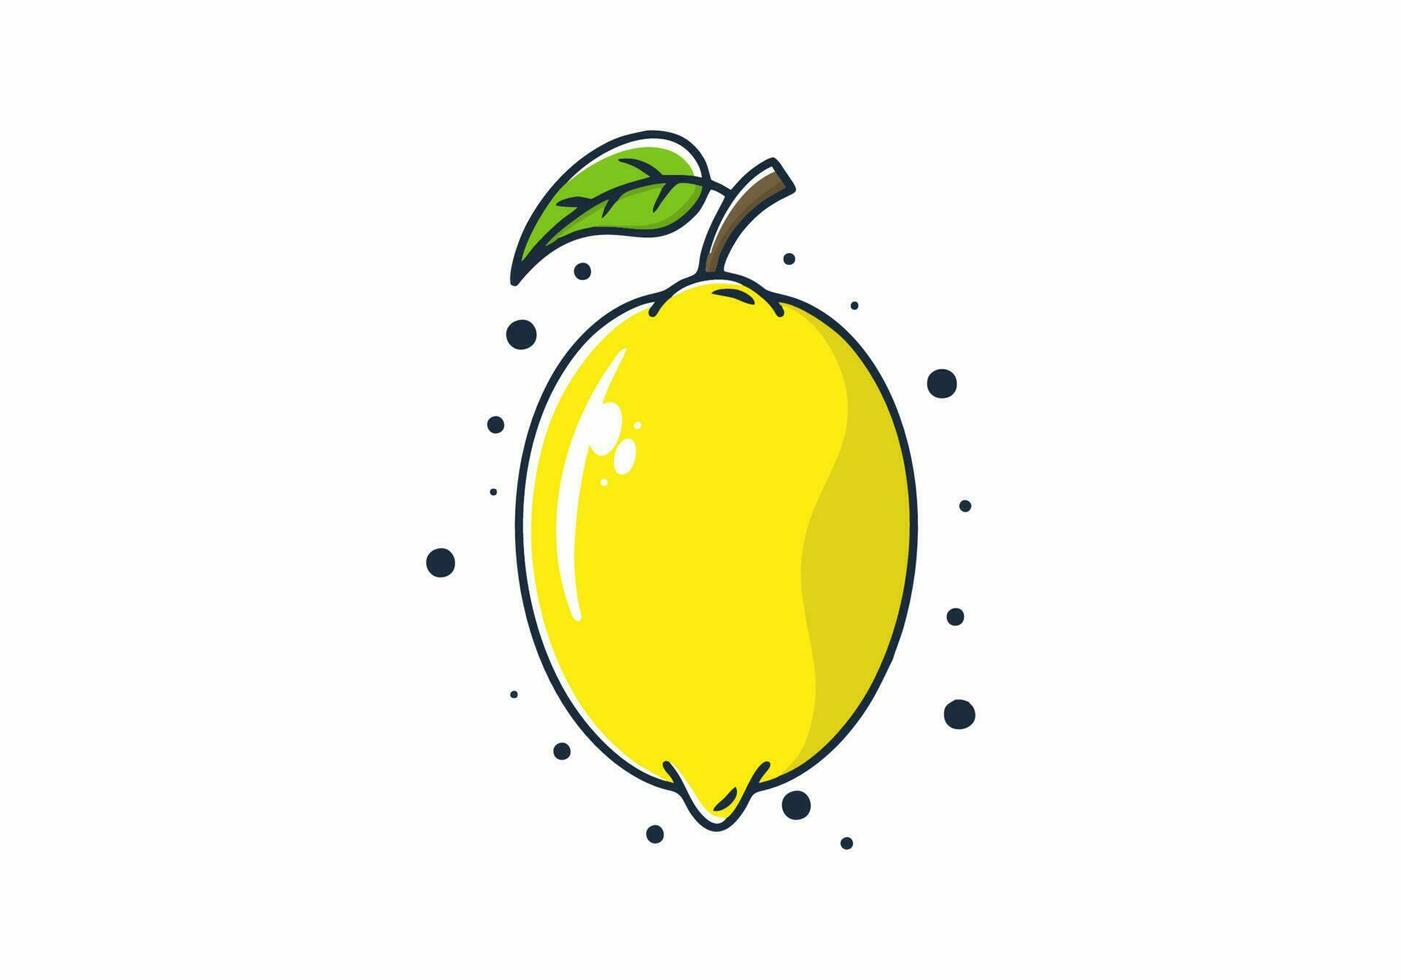 plano ilustração do uma amarelo limão fruta vetor